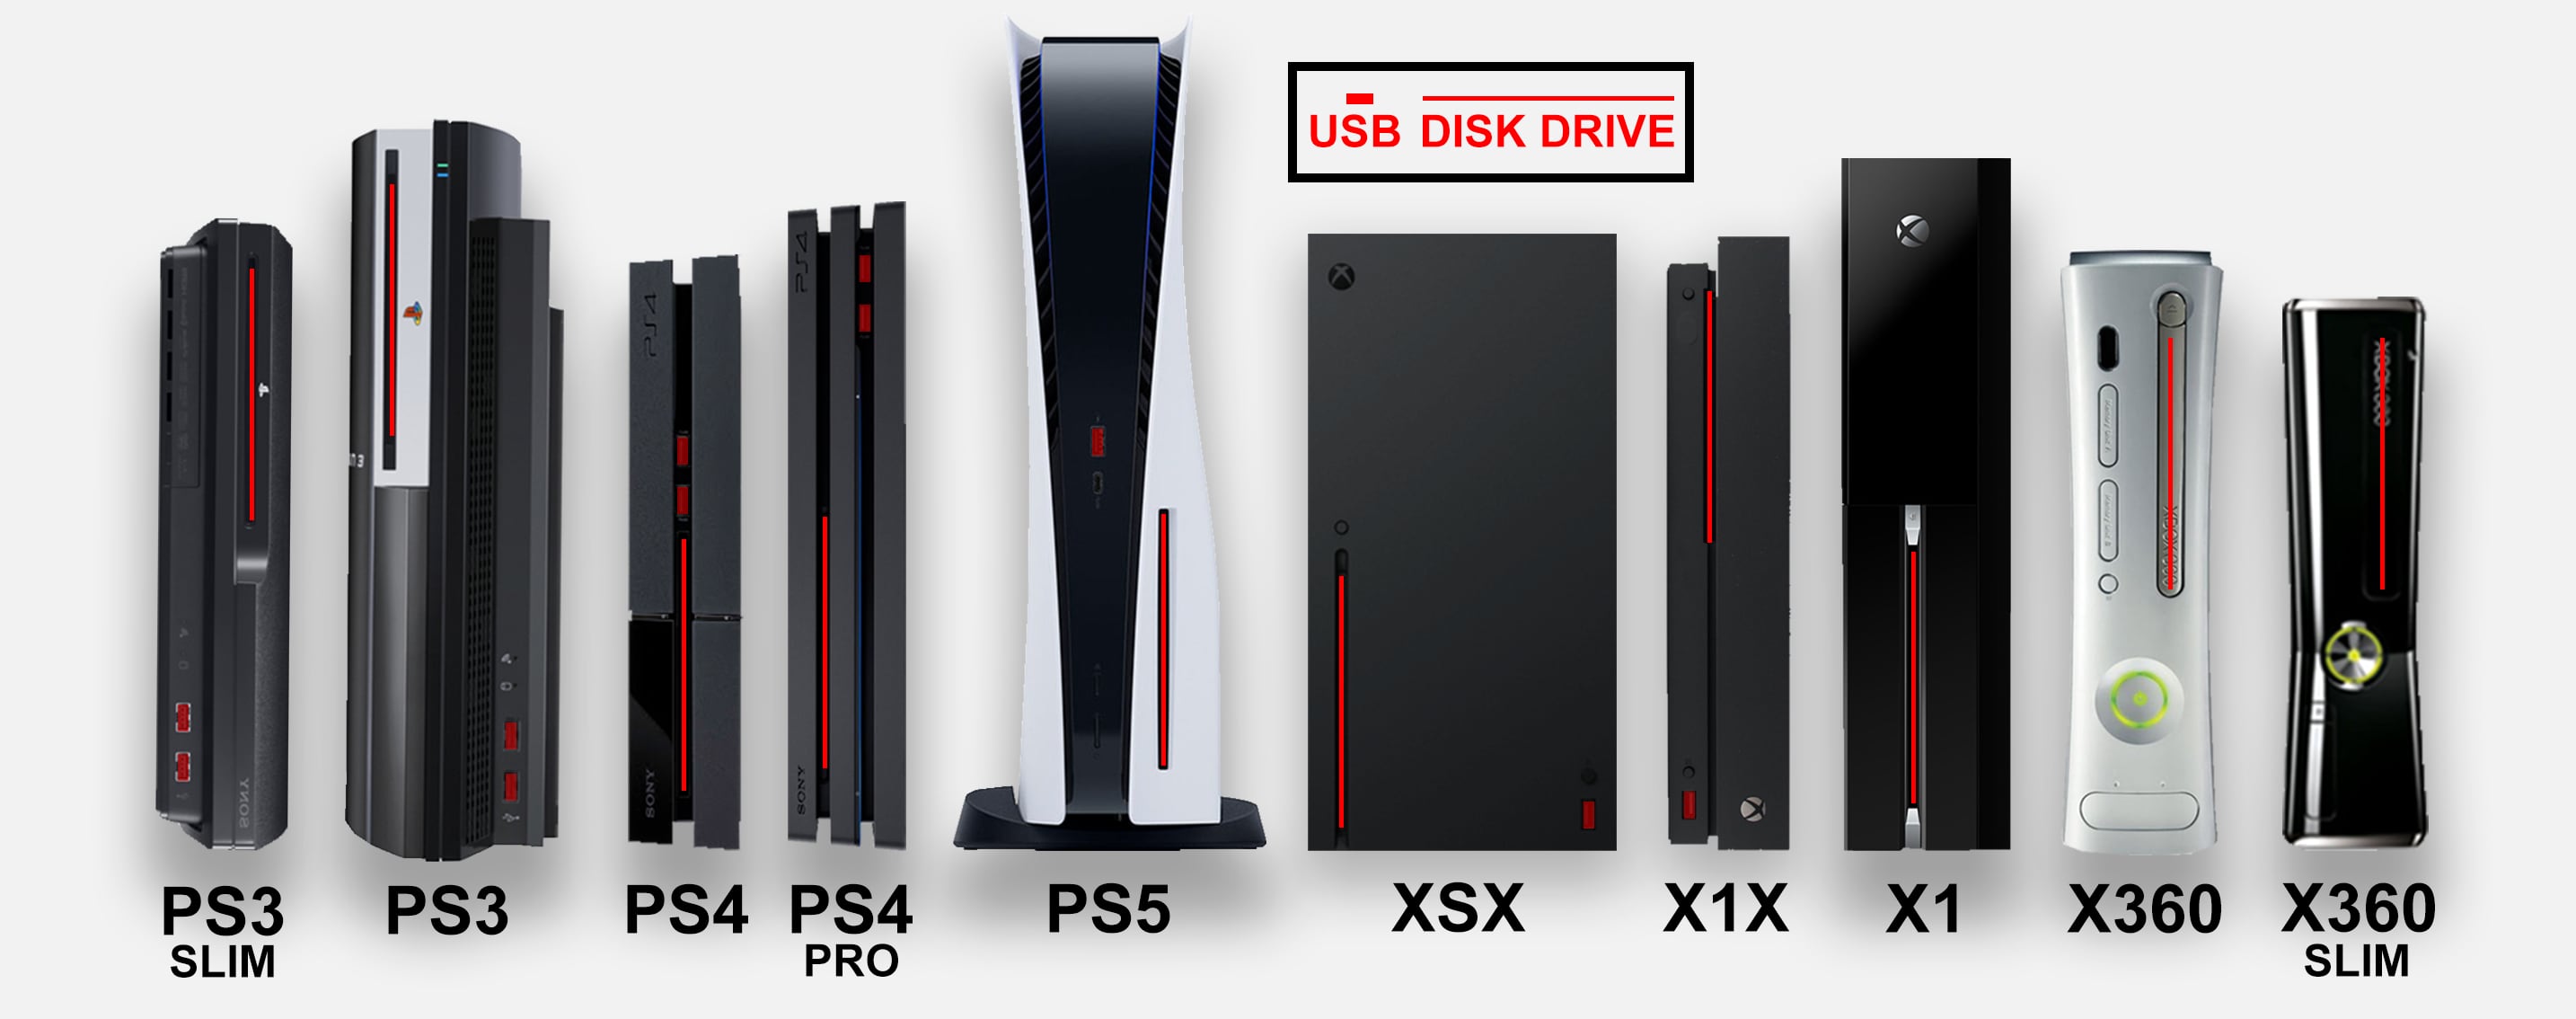 controller lur søm Hvor stor er Sony PlayStation 5? - FlatpanelsDK